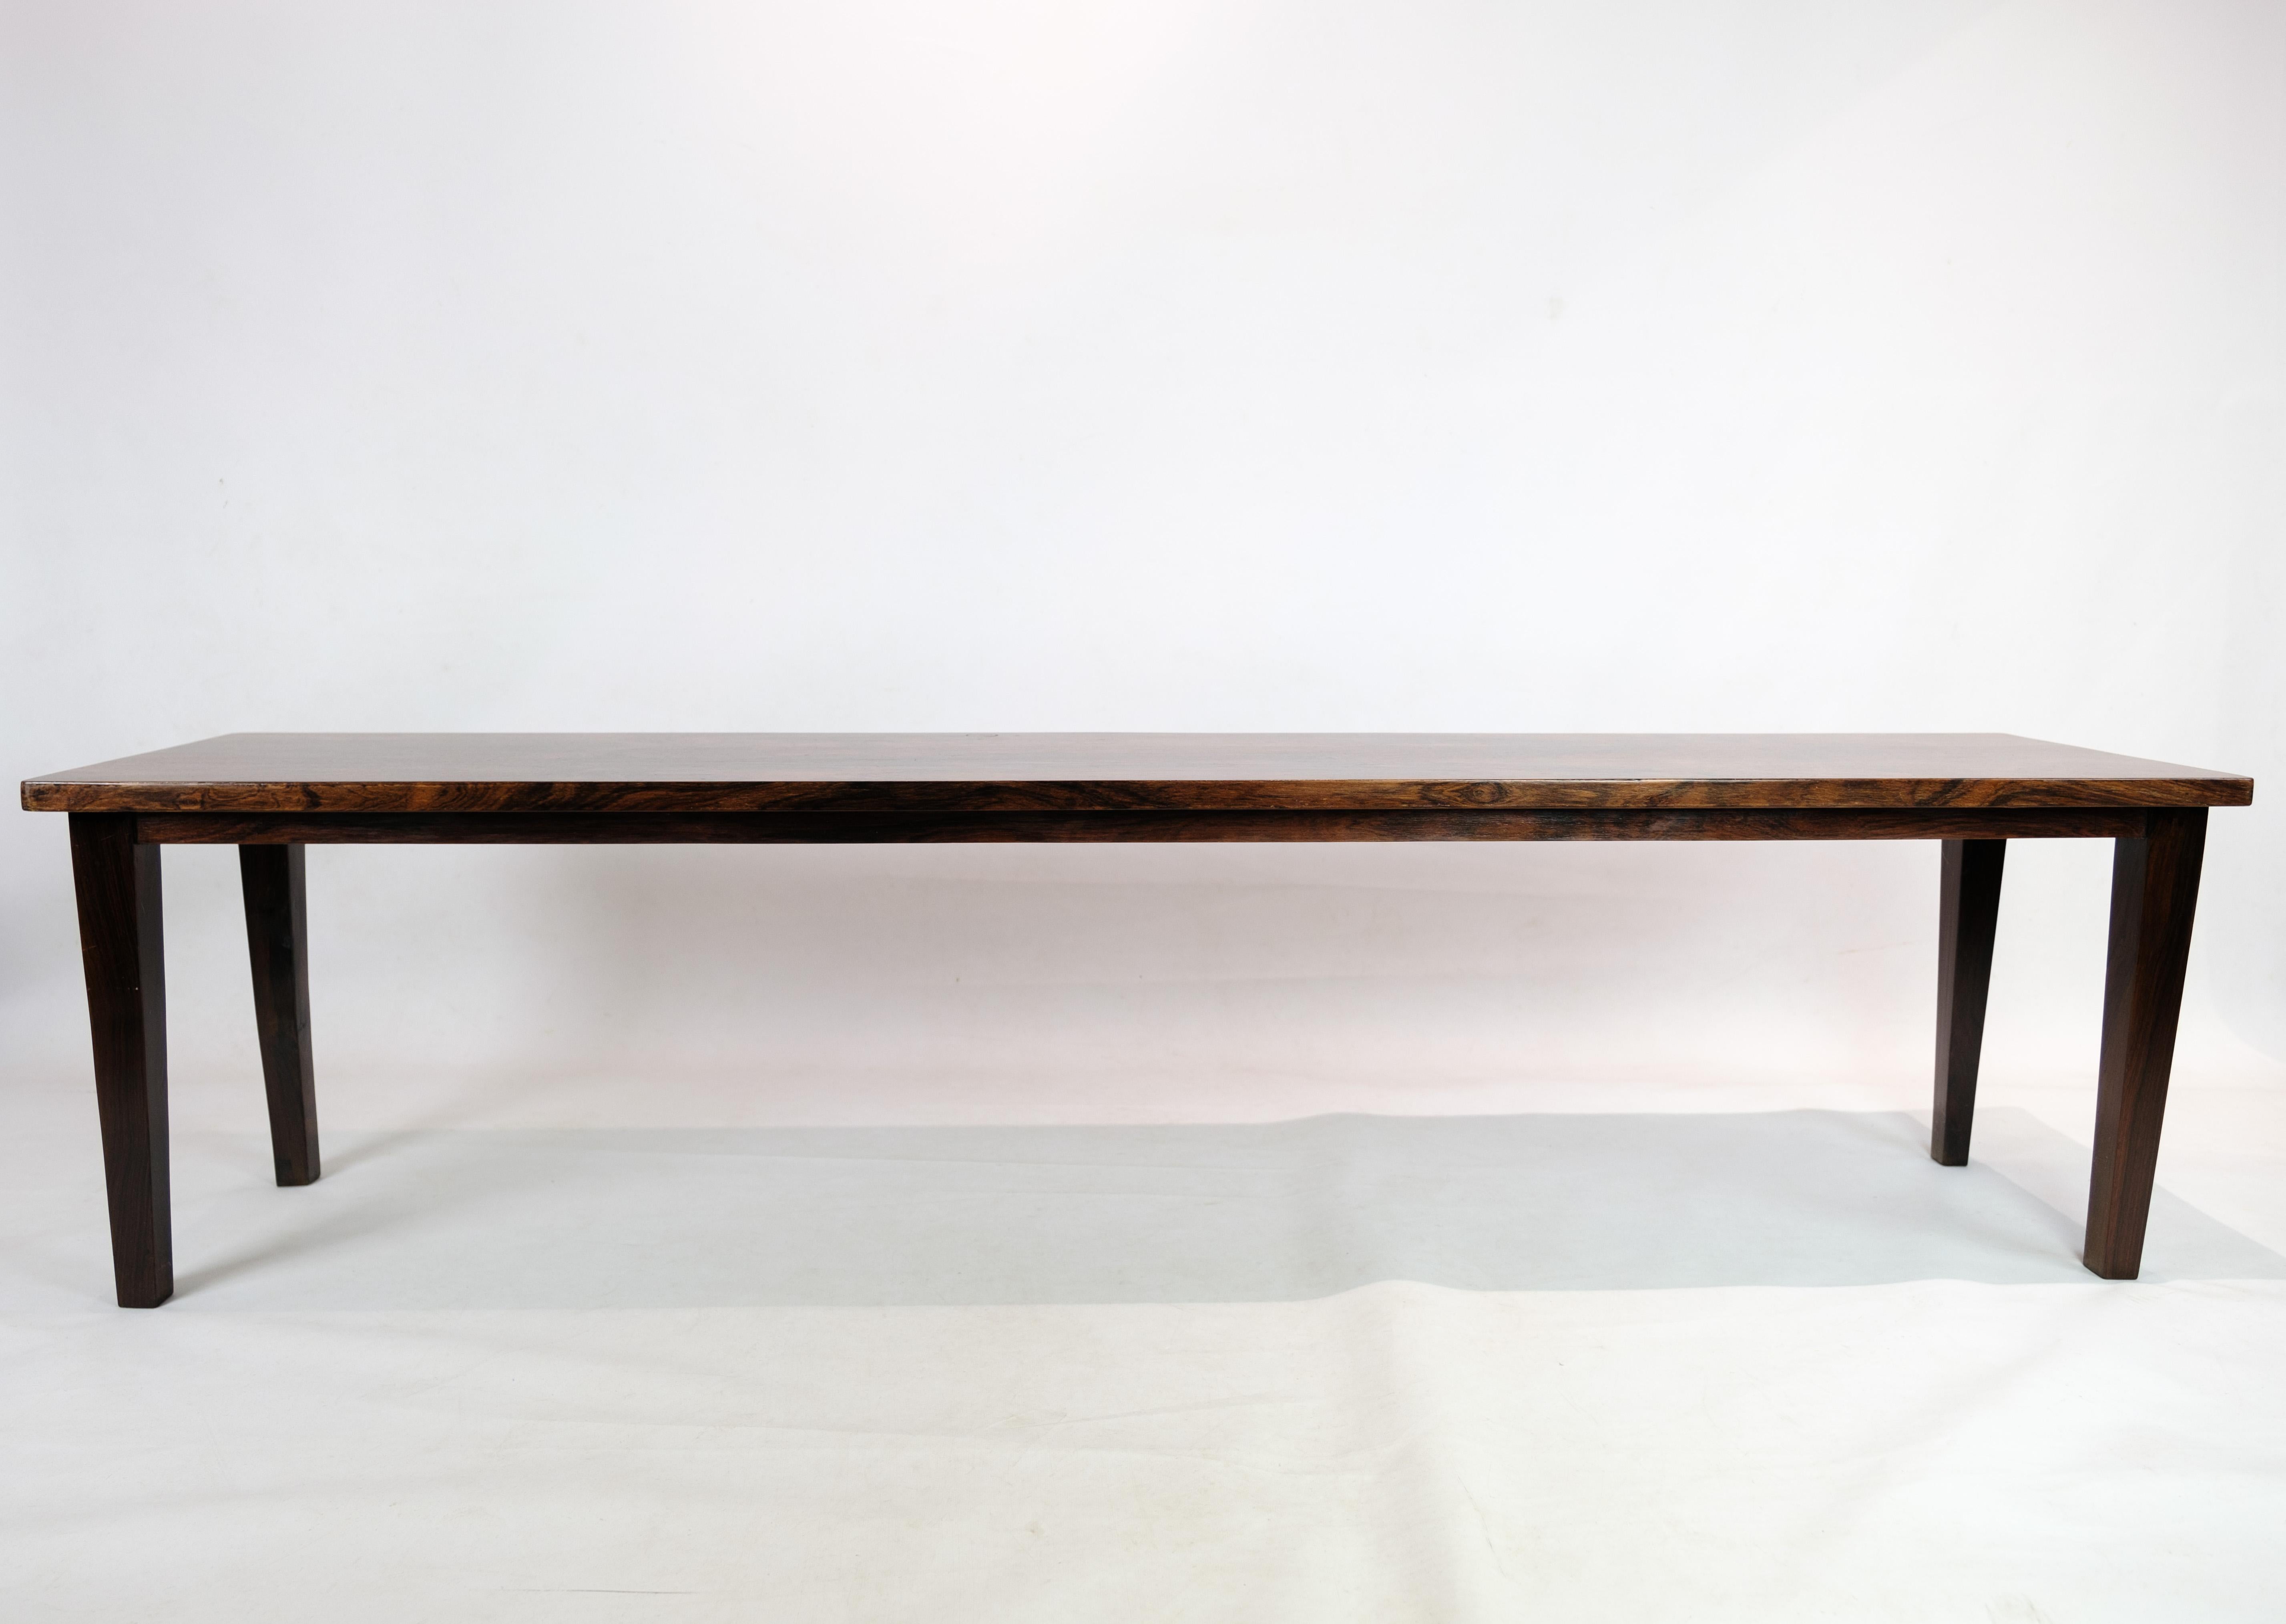 Cette exquise table d'appoint en bois de rose, fabriquée dans les années 1960, incarne l'élégance et la sophistication du design danois. Avec ses lignes épurées et son riche grain de bois de rose, il ajoute une touche de charme mid-century à